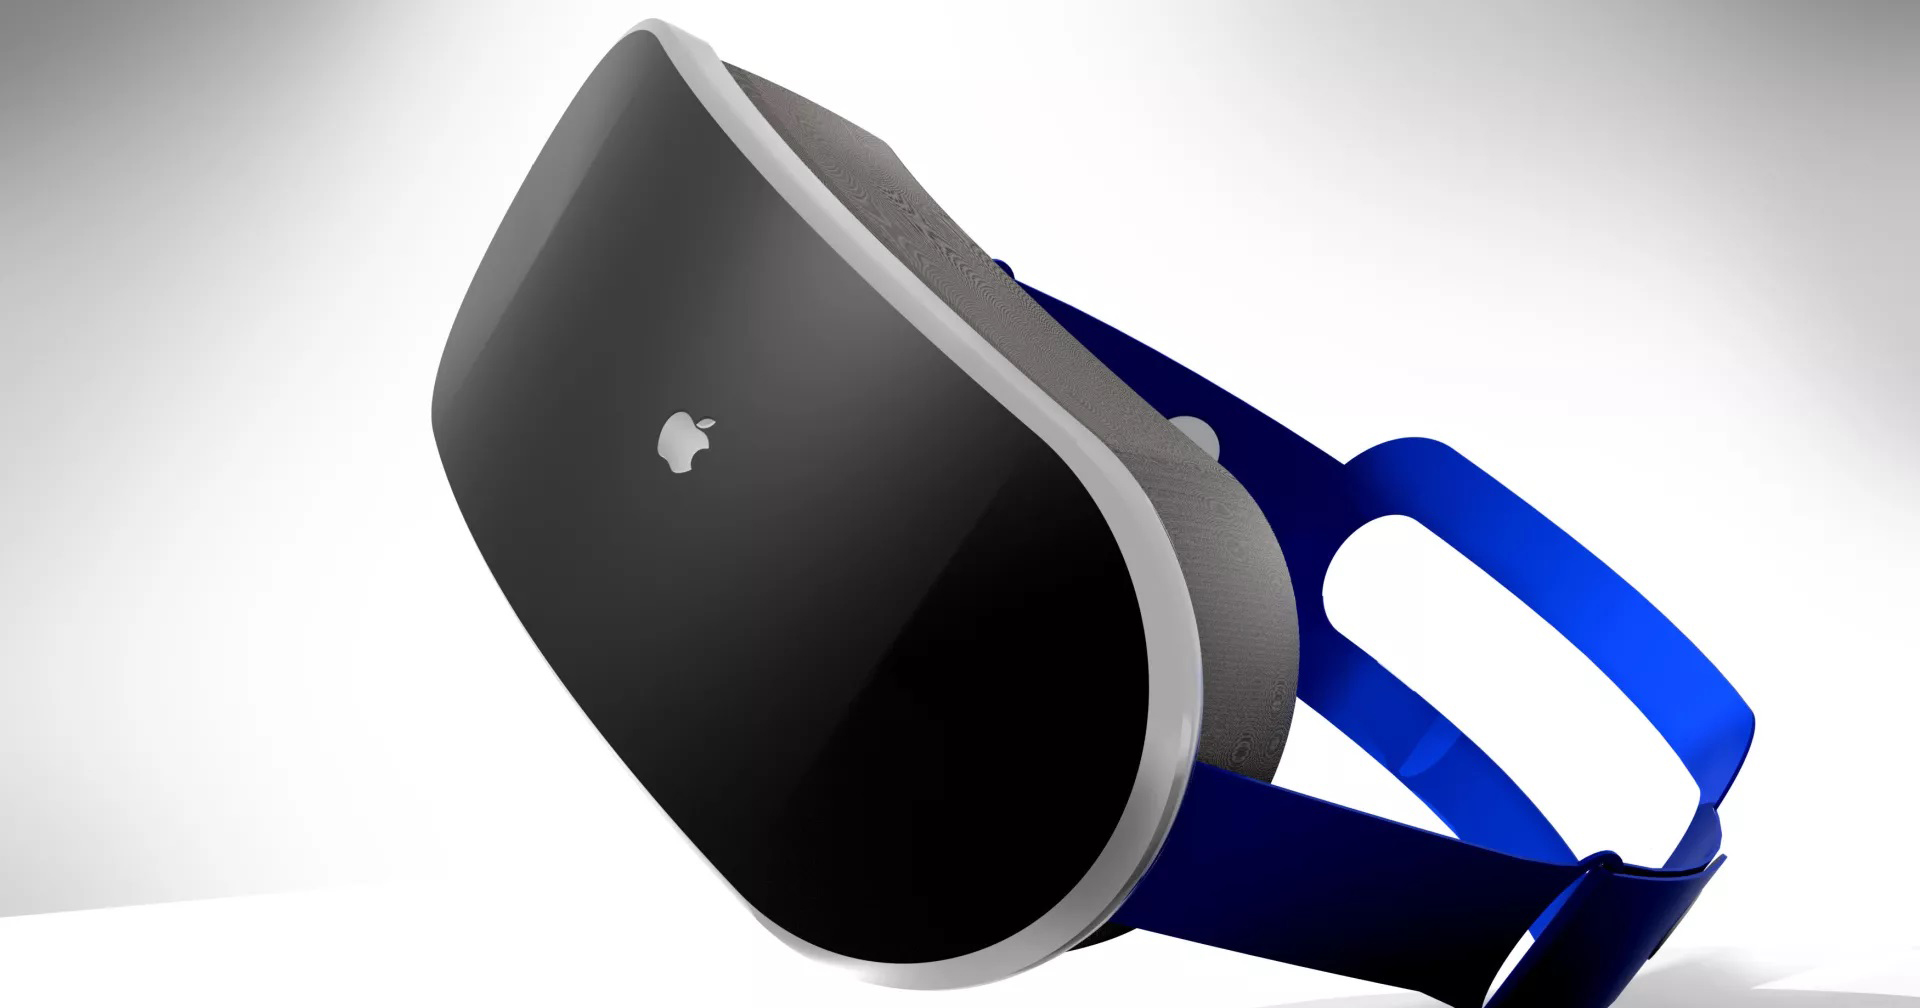 แว่น Mixed Reality ของ Apple อาจเลื่อนเปิดตัวออกไป เนื่องจากปัญหาซอฟต์แวร์